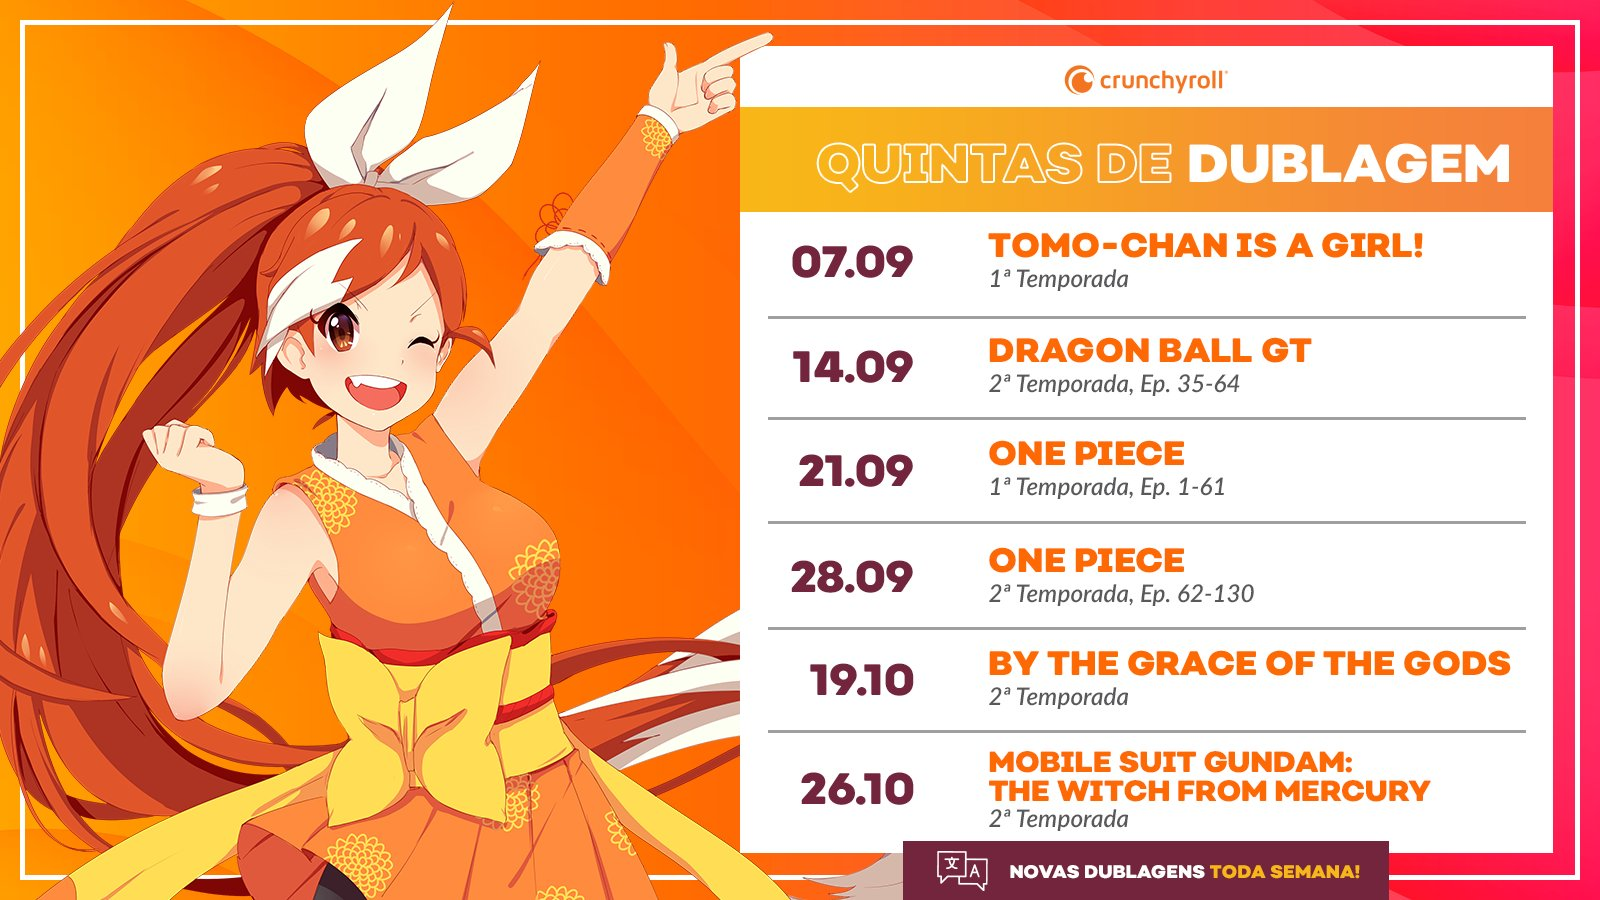 Crunchyroll confirma animes dublados na temporada de inverno 2021